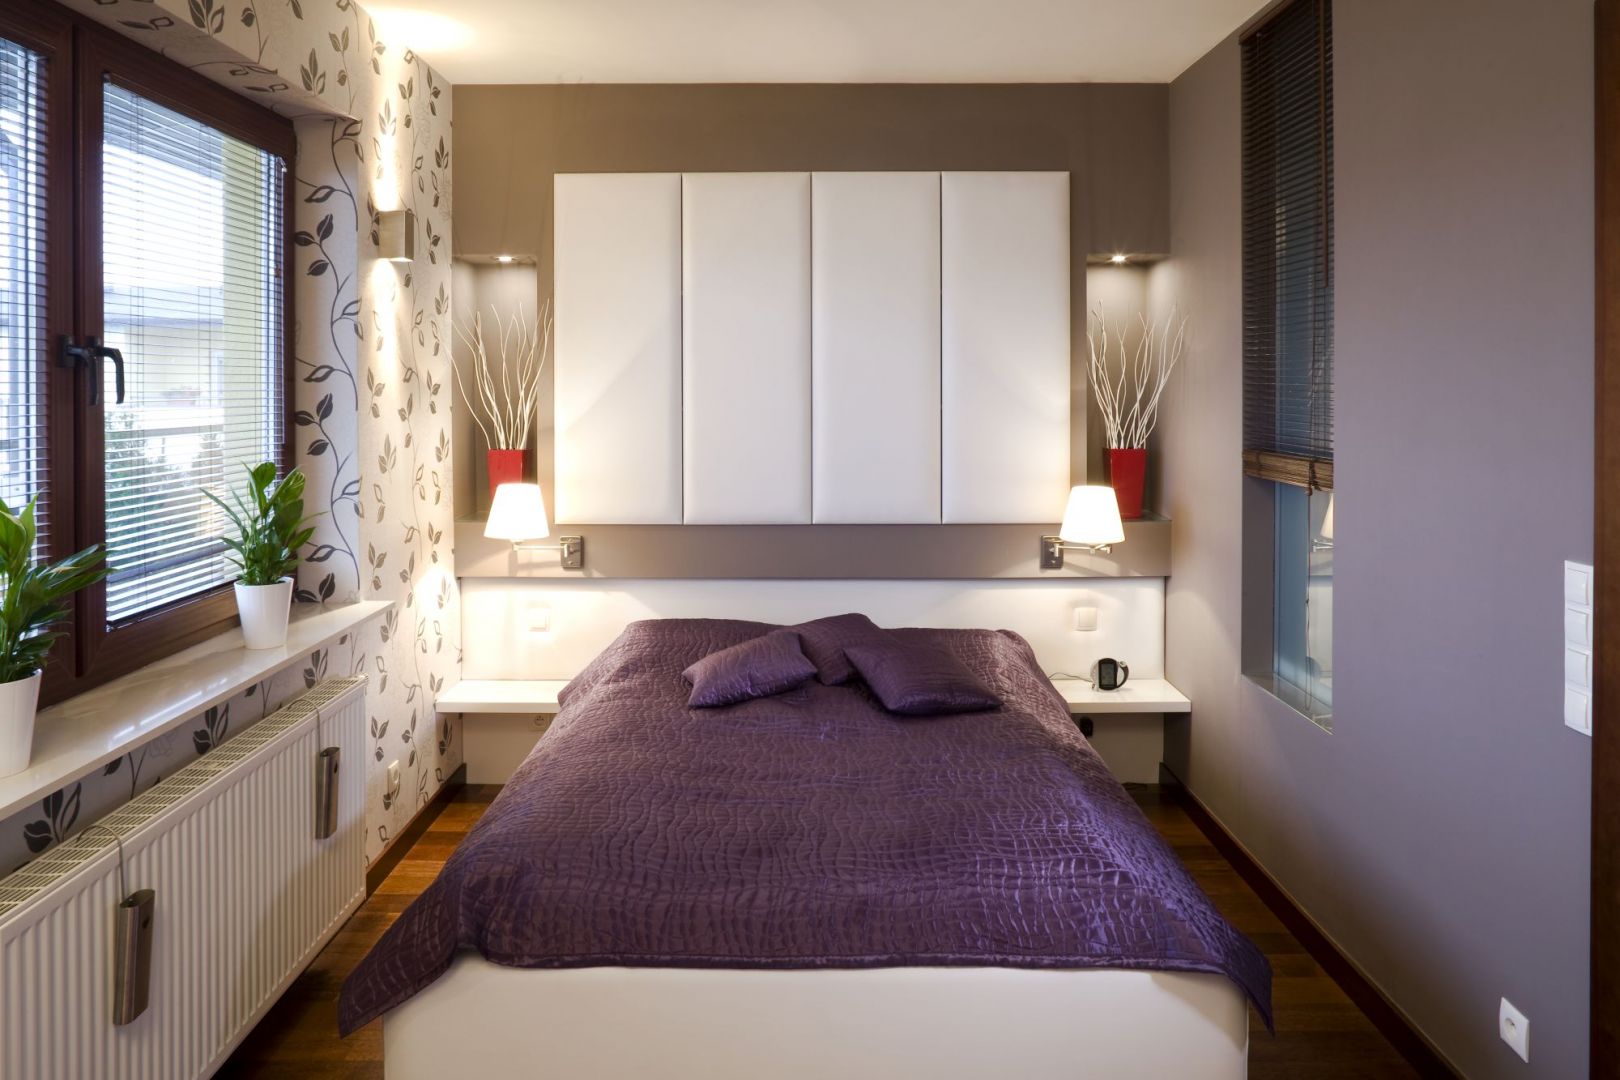 Wnętrze tej sypialni jest małe. Białe półki nad łóżkiem wizualnie powiększają przestrzeń oraz oferują dodatkowe miejsce do przechowywania. Projekt: Agnieszka Kubasik Fot. Bartosz Jarosz 

